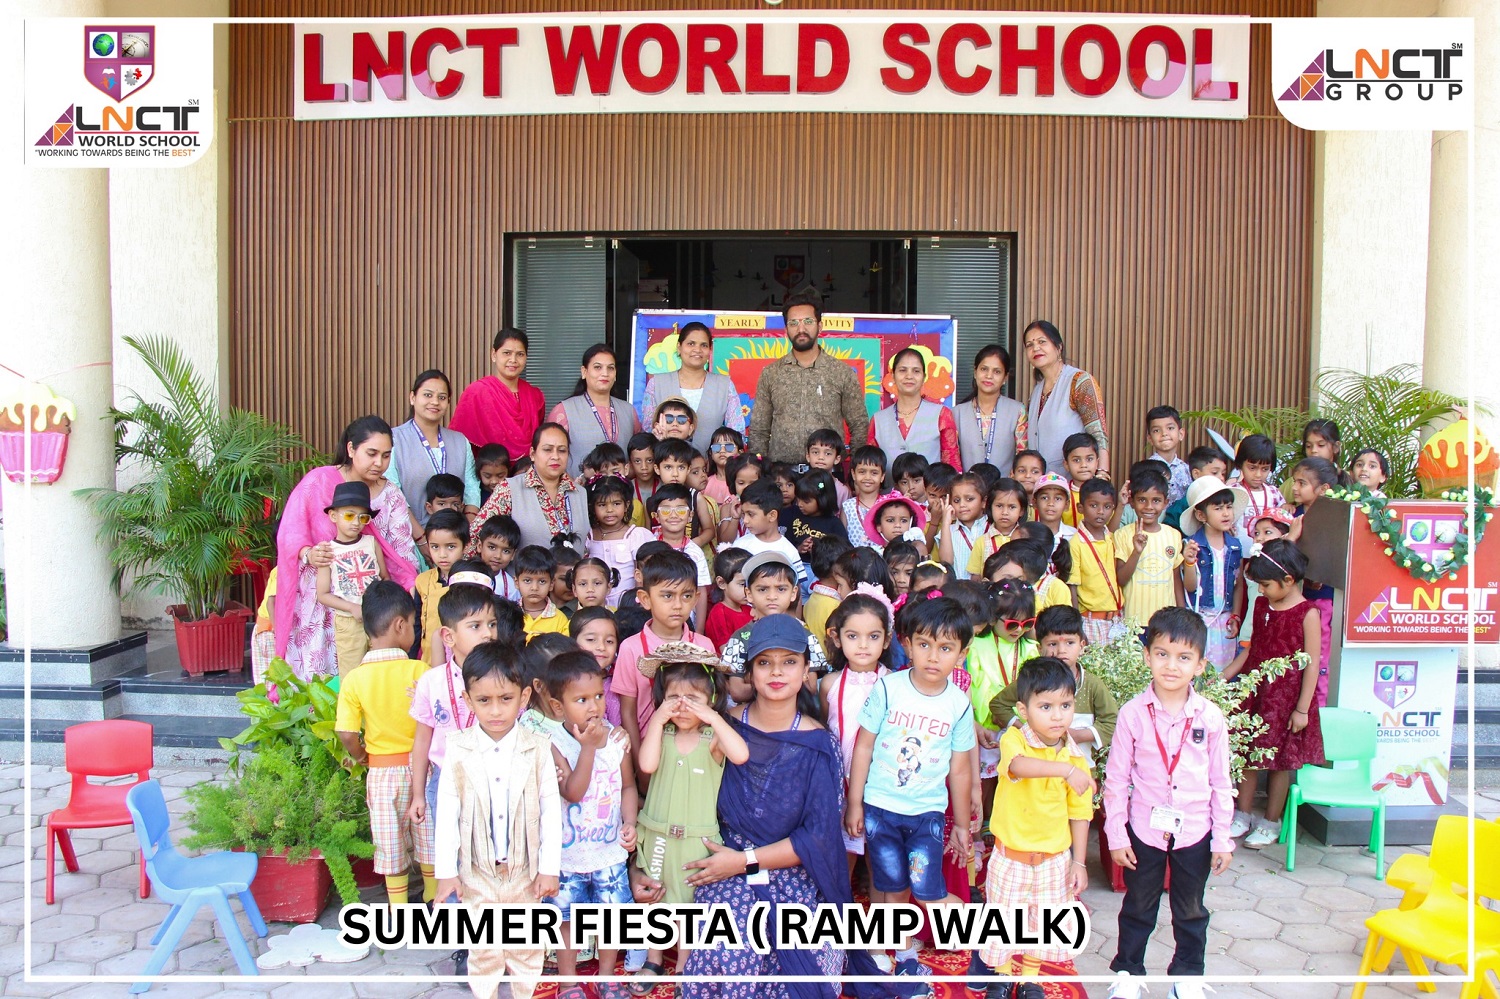 Summer Catwalk Extravaganza at LNCT World School! 